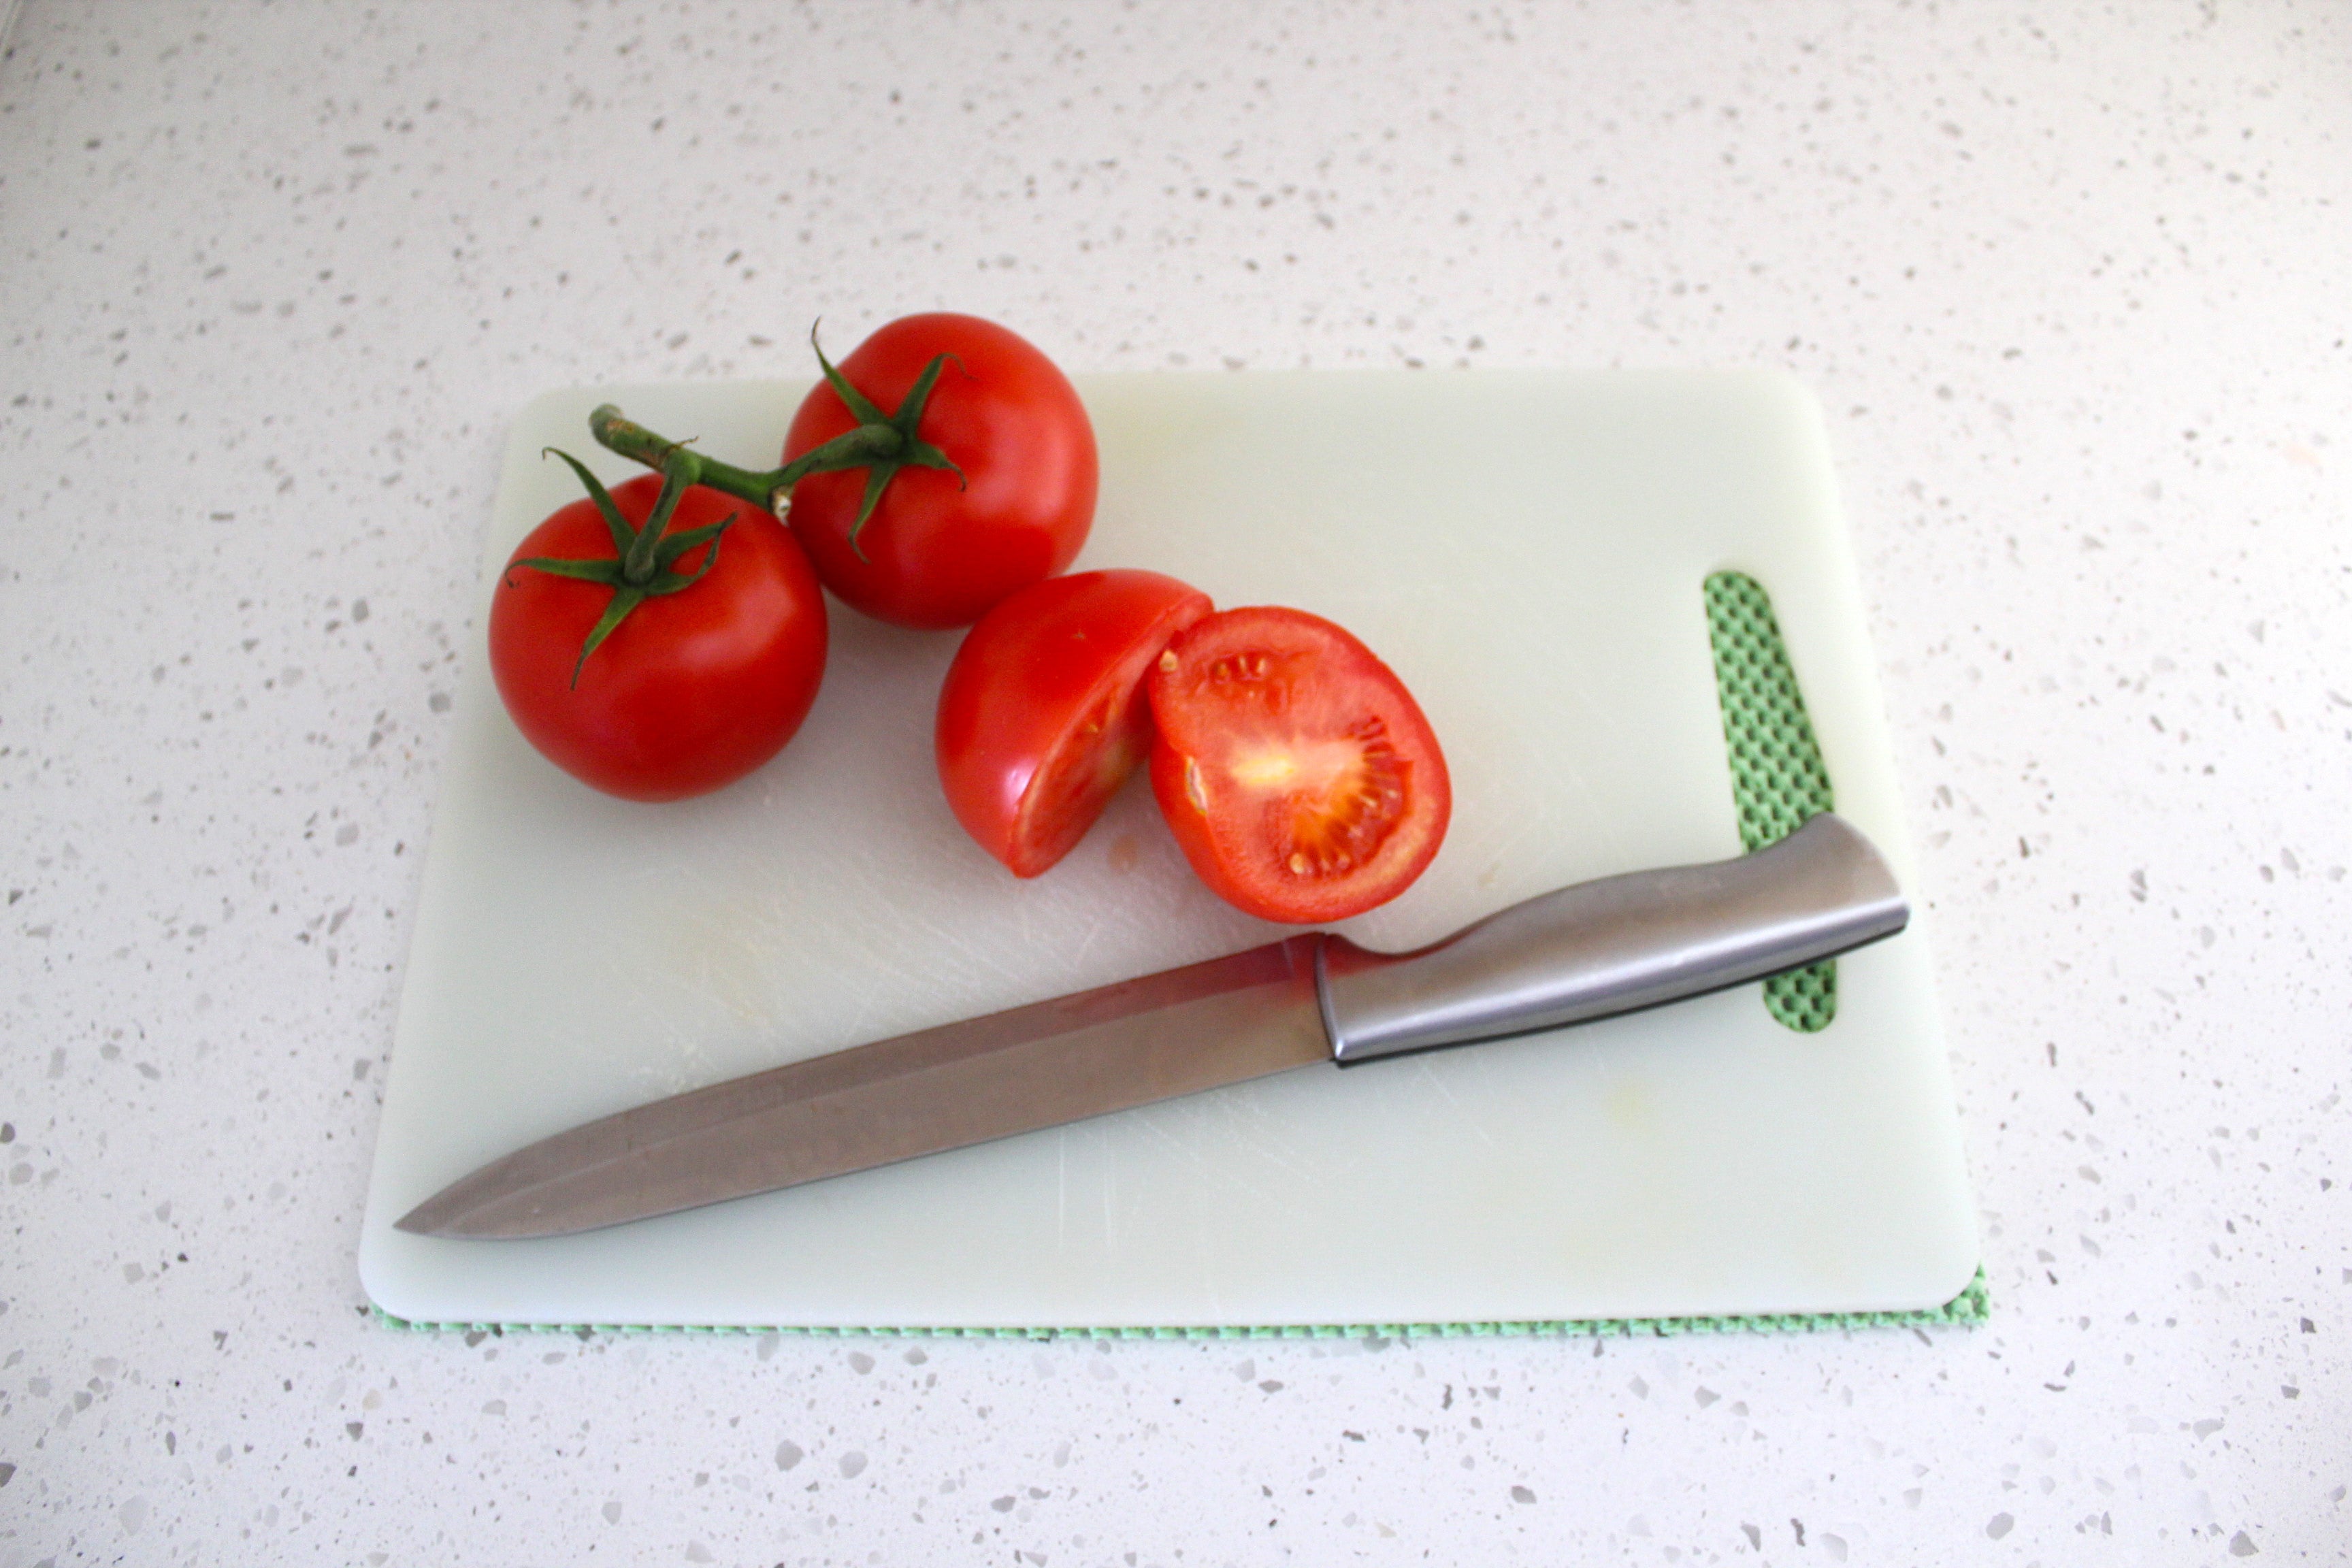 6 X 8 - Super Green Non-Slip Kitchen Cutting Board Mat - Georgia Rug Pads